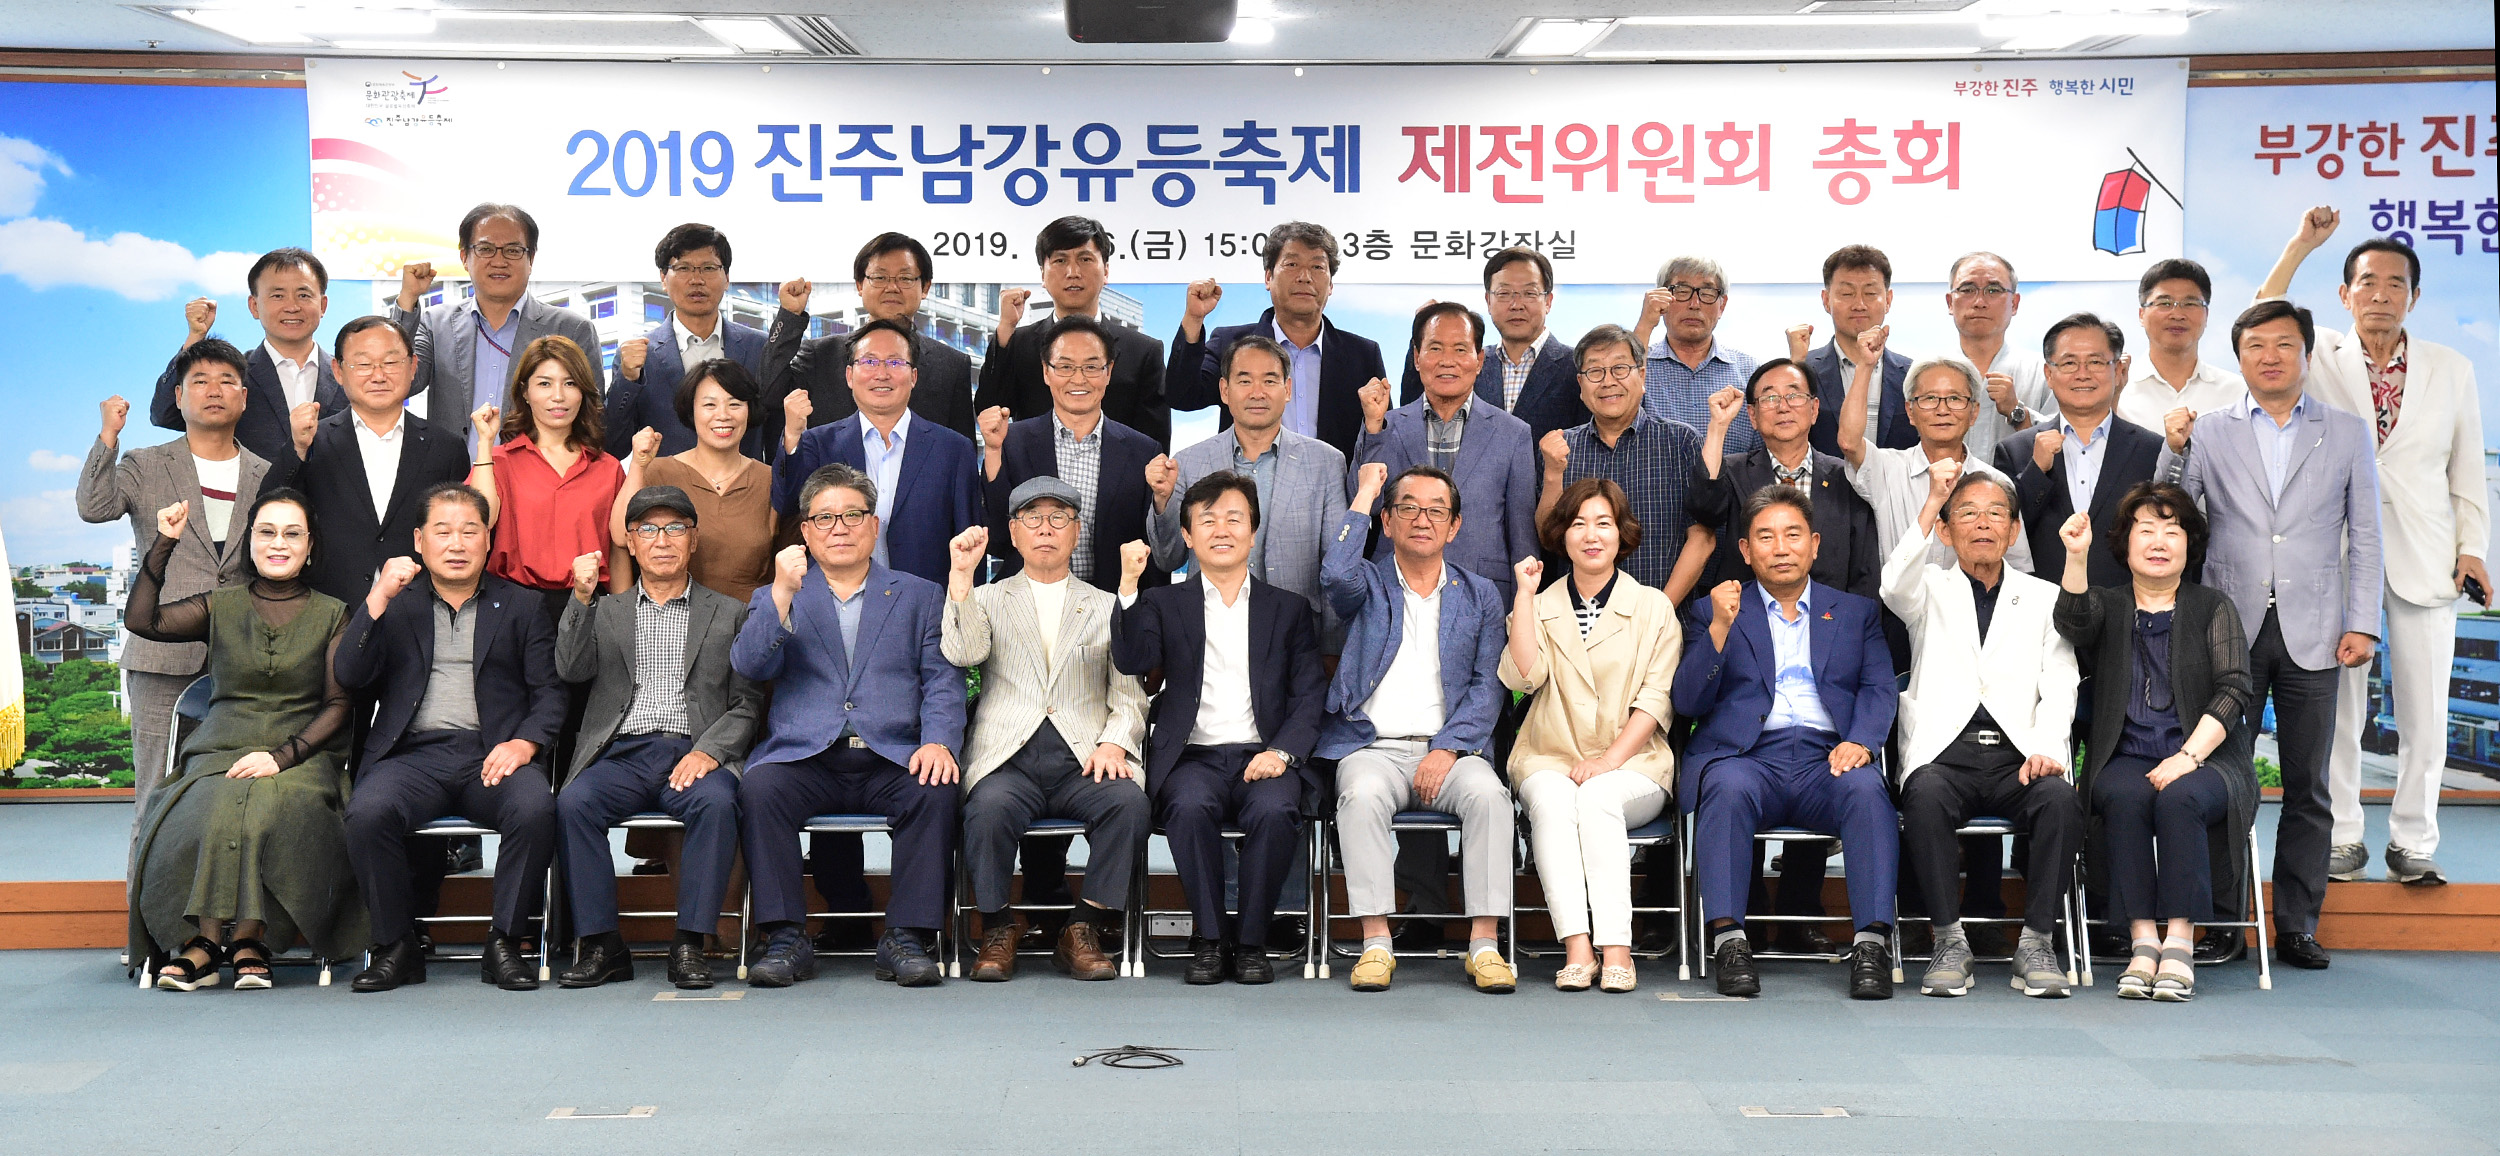 0816 2019 진주남강유등축제 제전위원회 개최로 축제준비 박차 (1).JPG